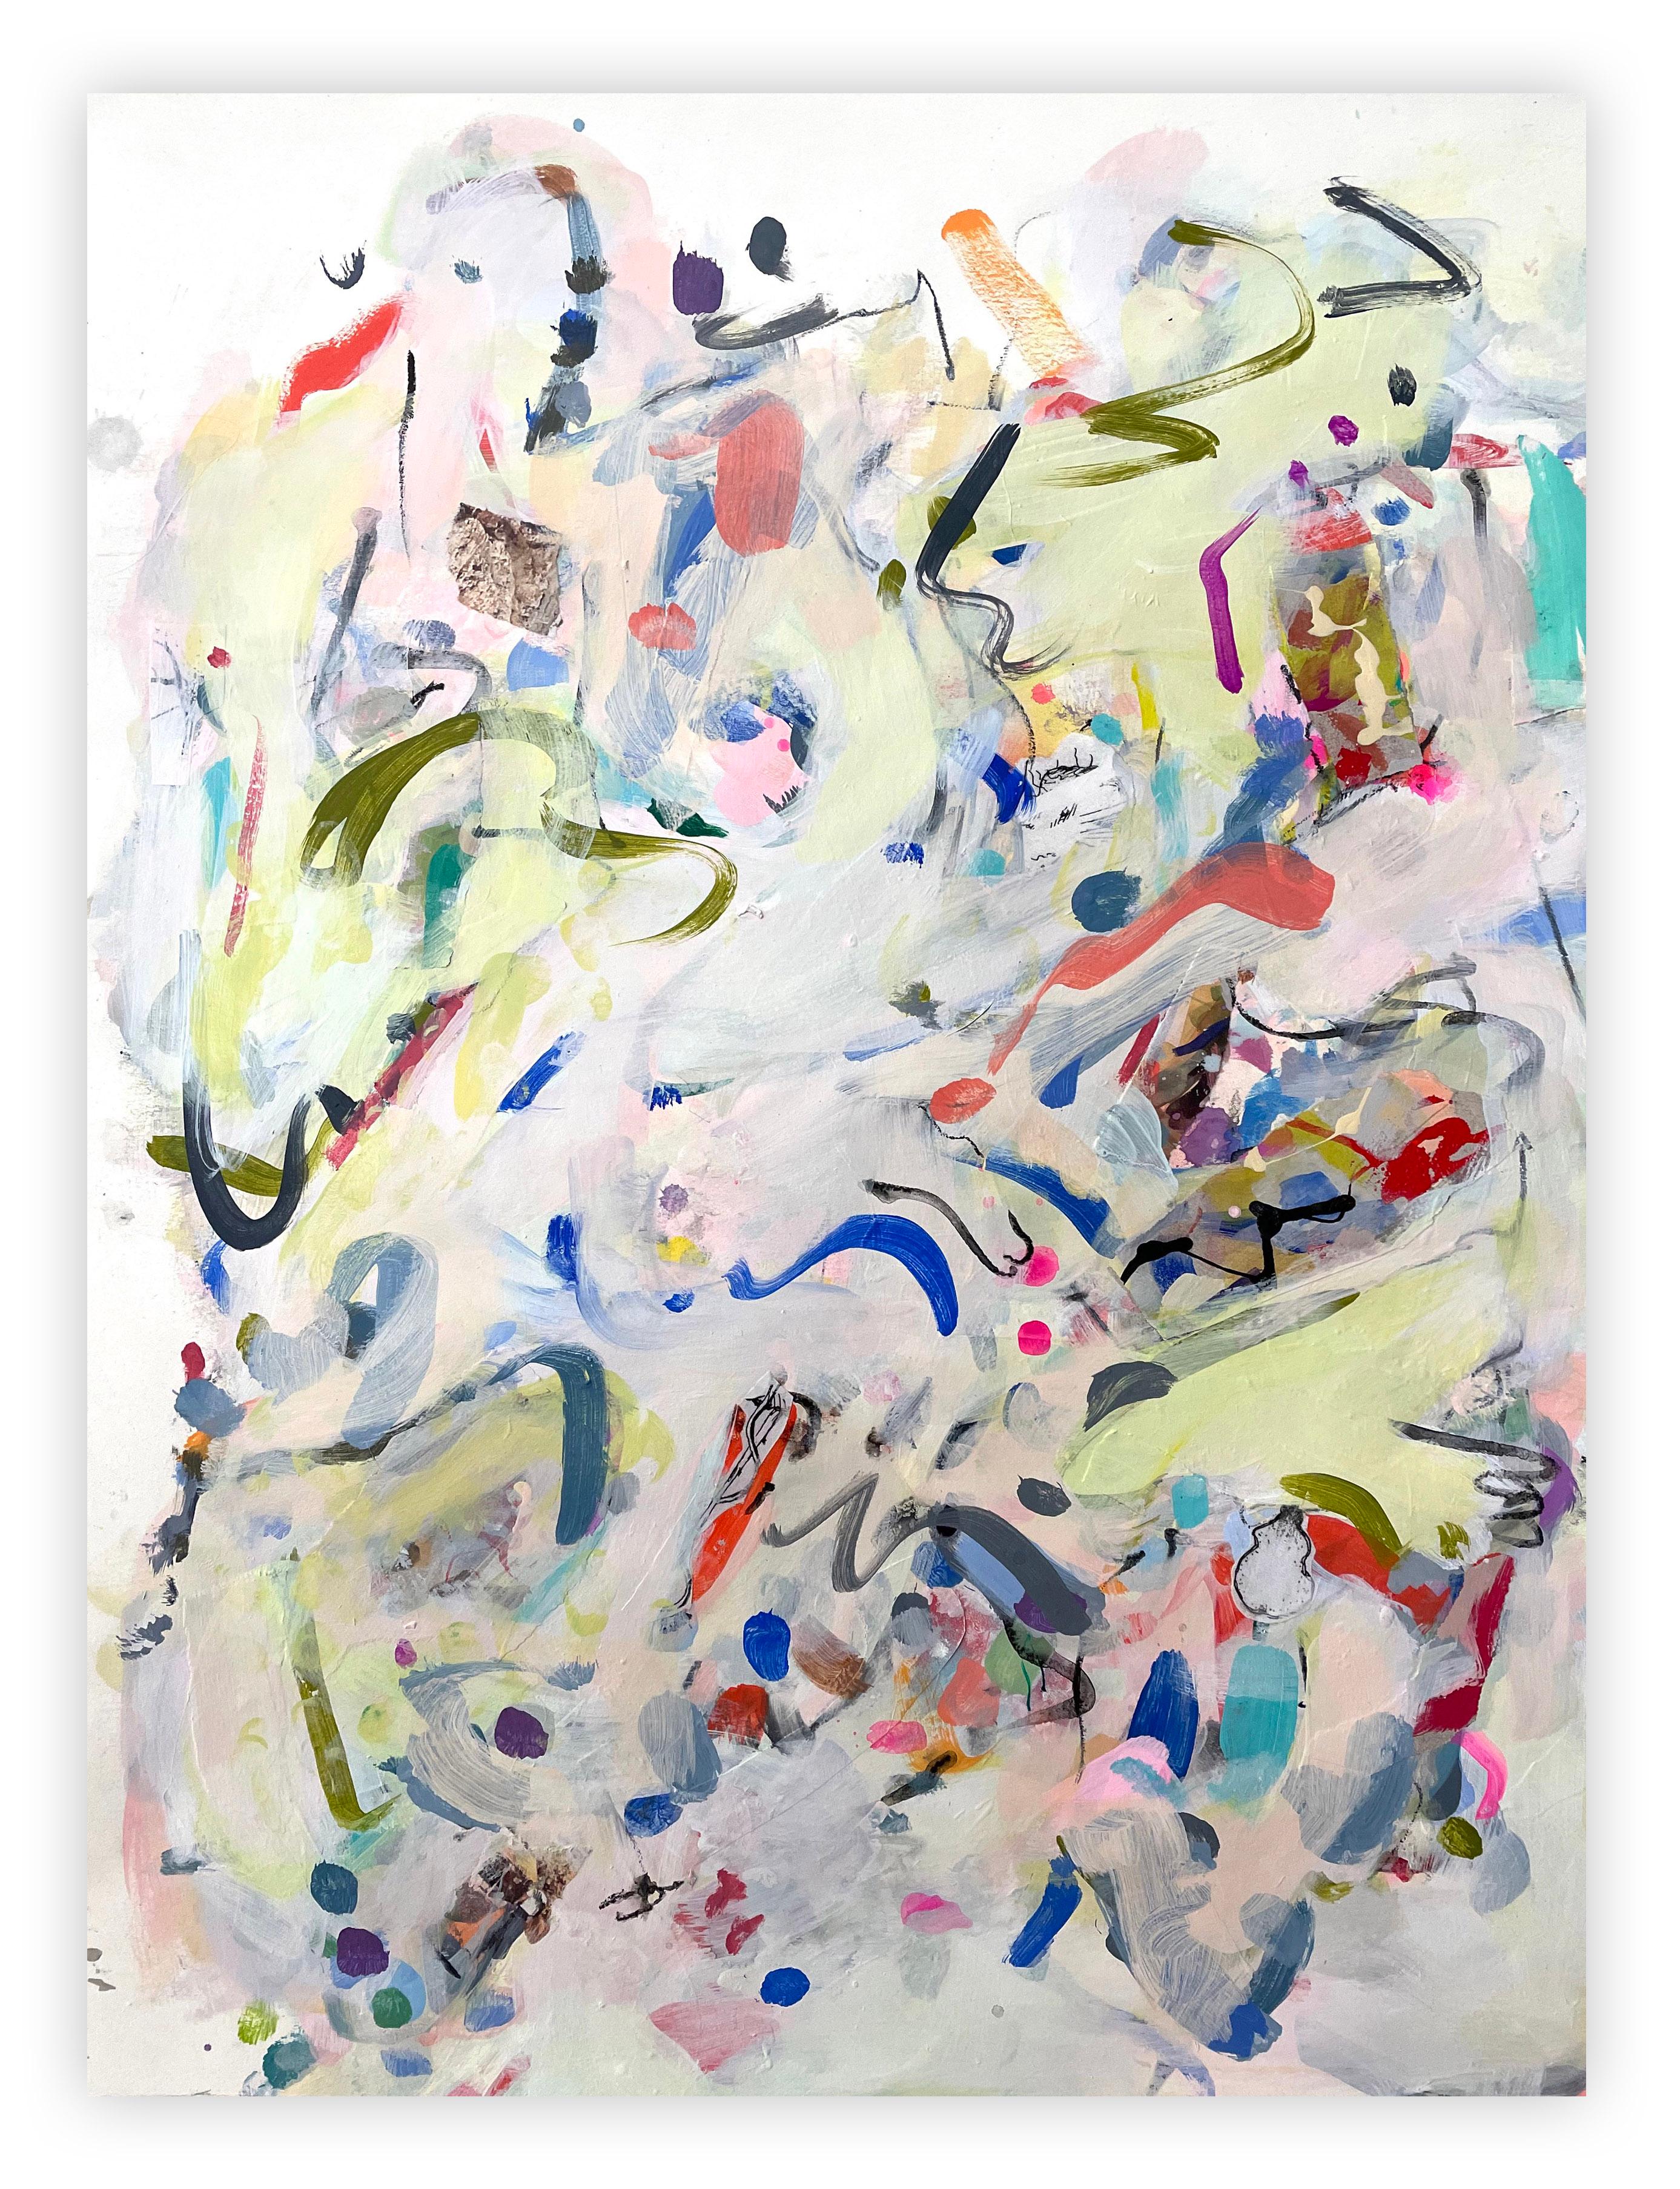 Wave (peinture abstraite) - Painting de Gina Werfel